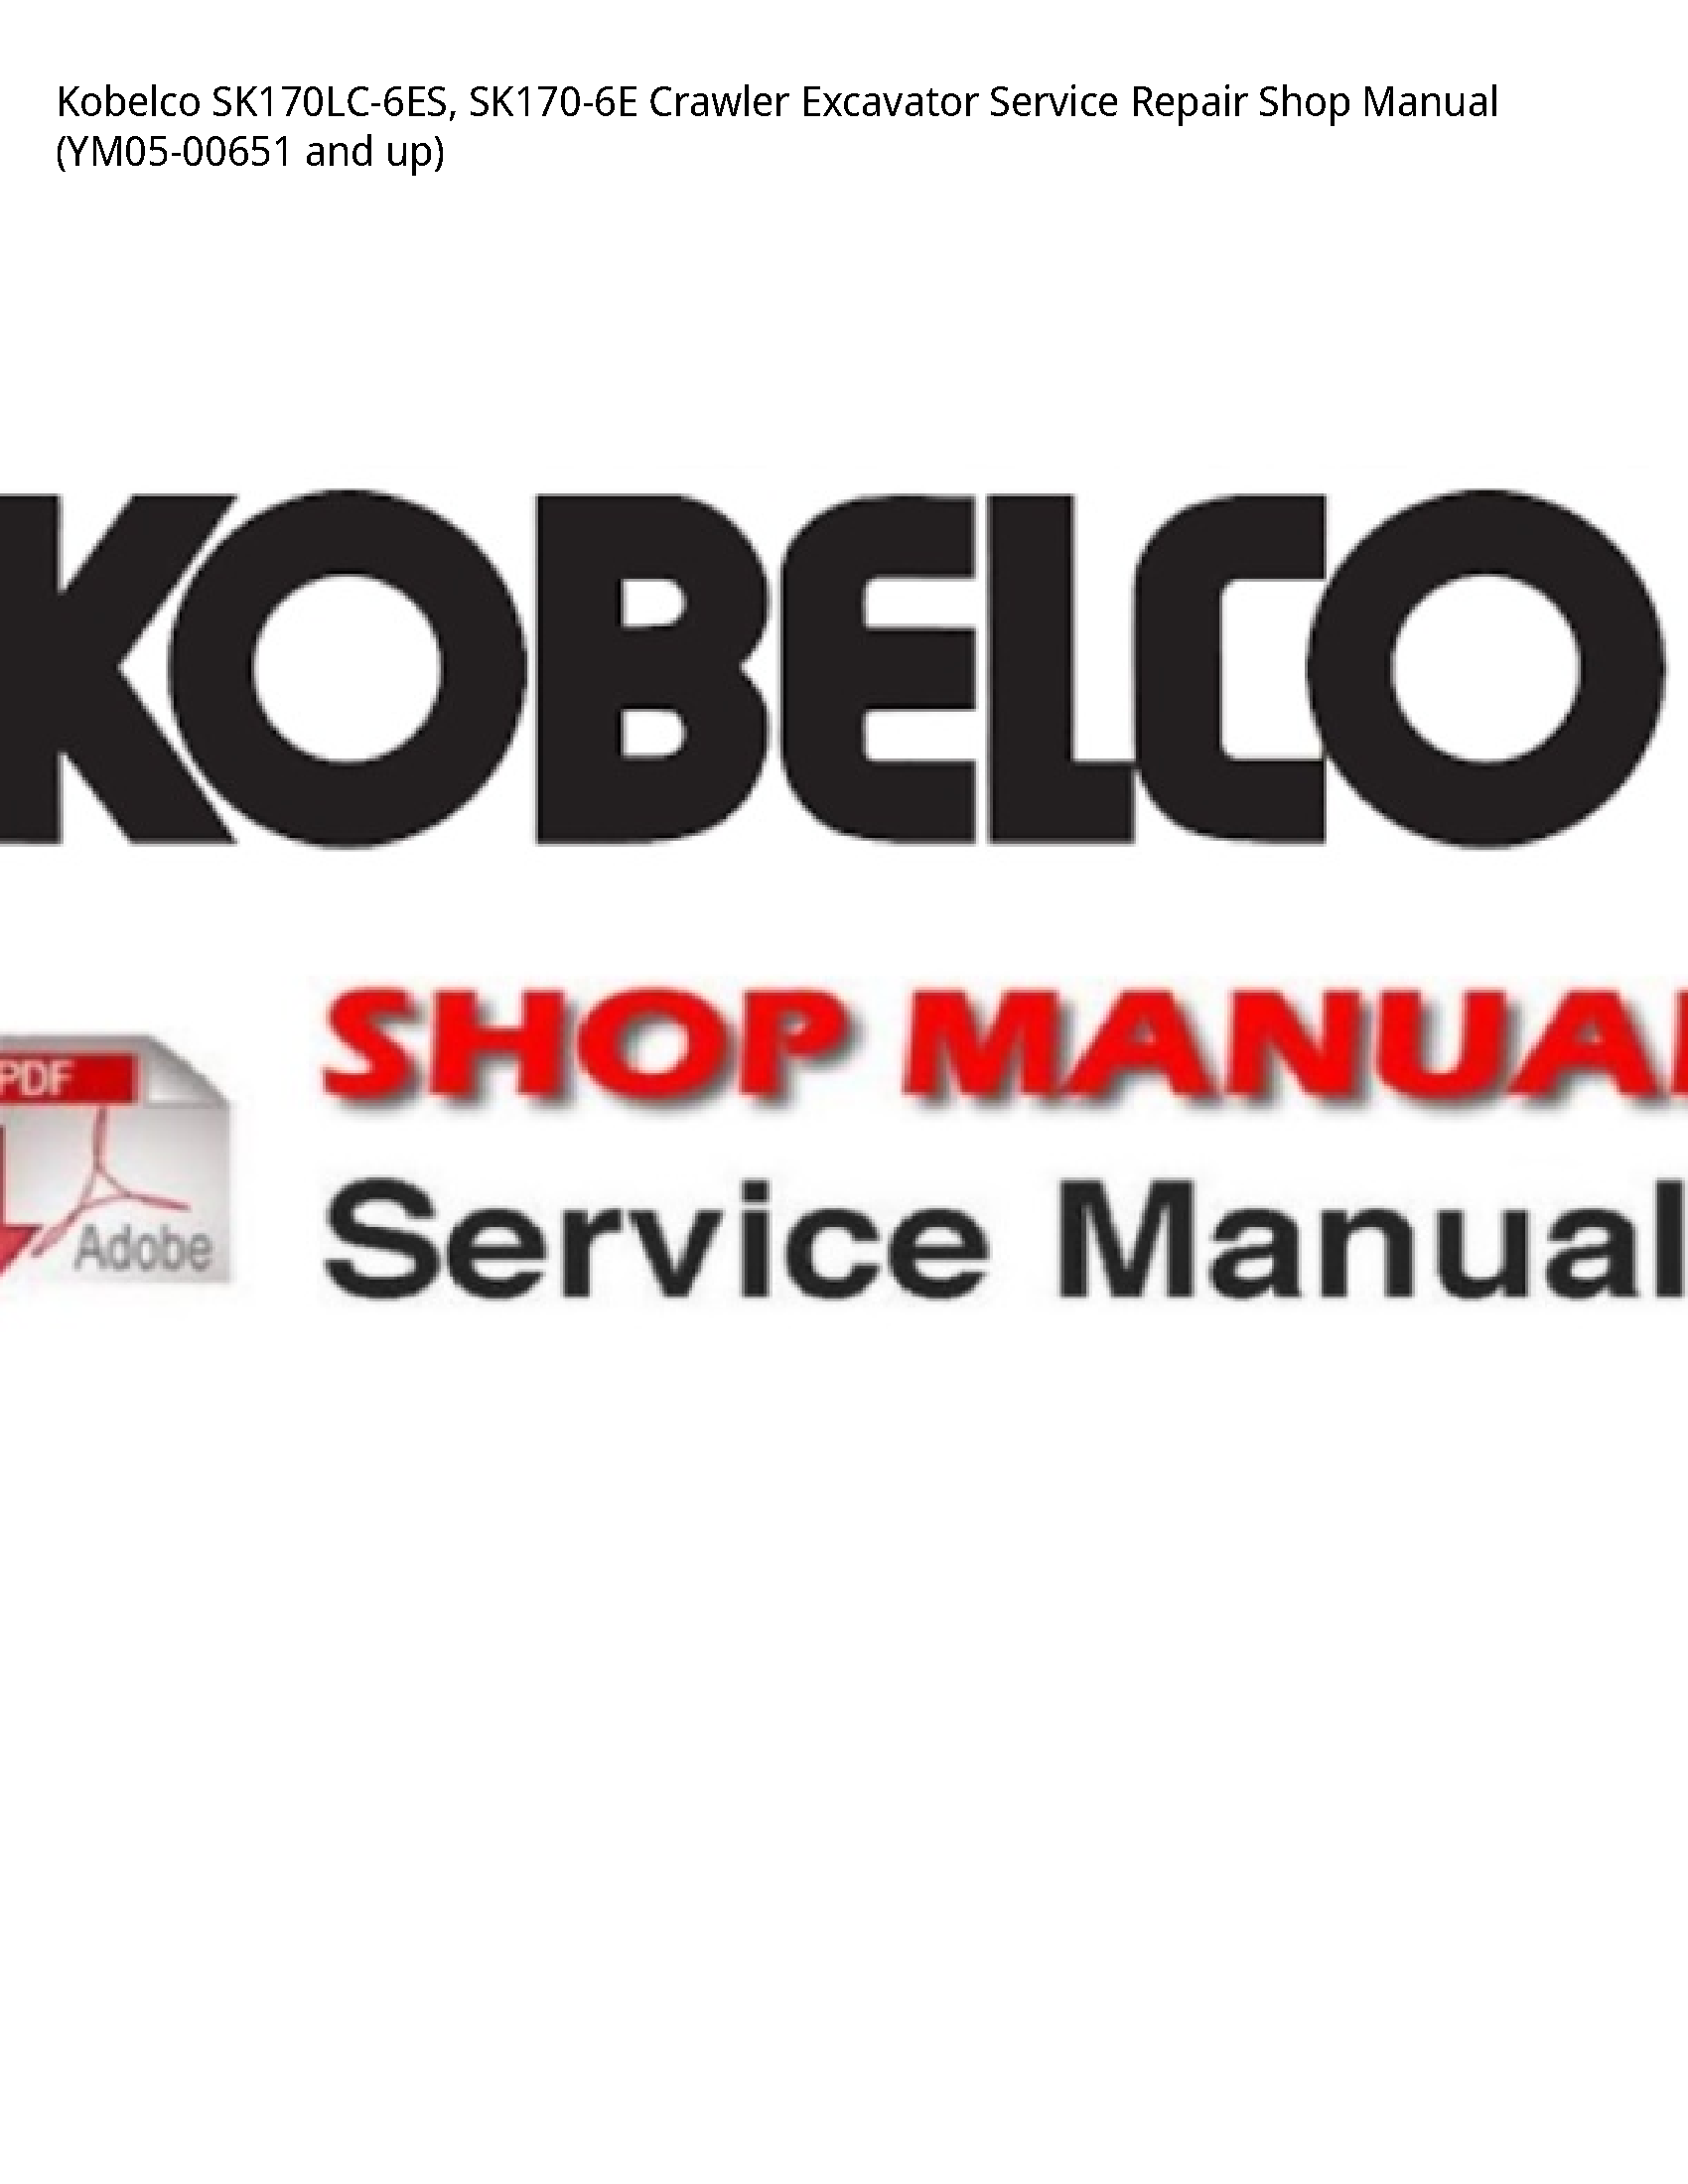 Kobelco SK170LC-6ES Crawler Excavator manual